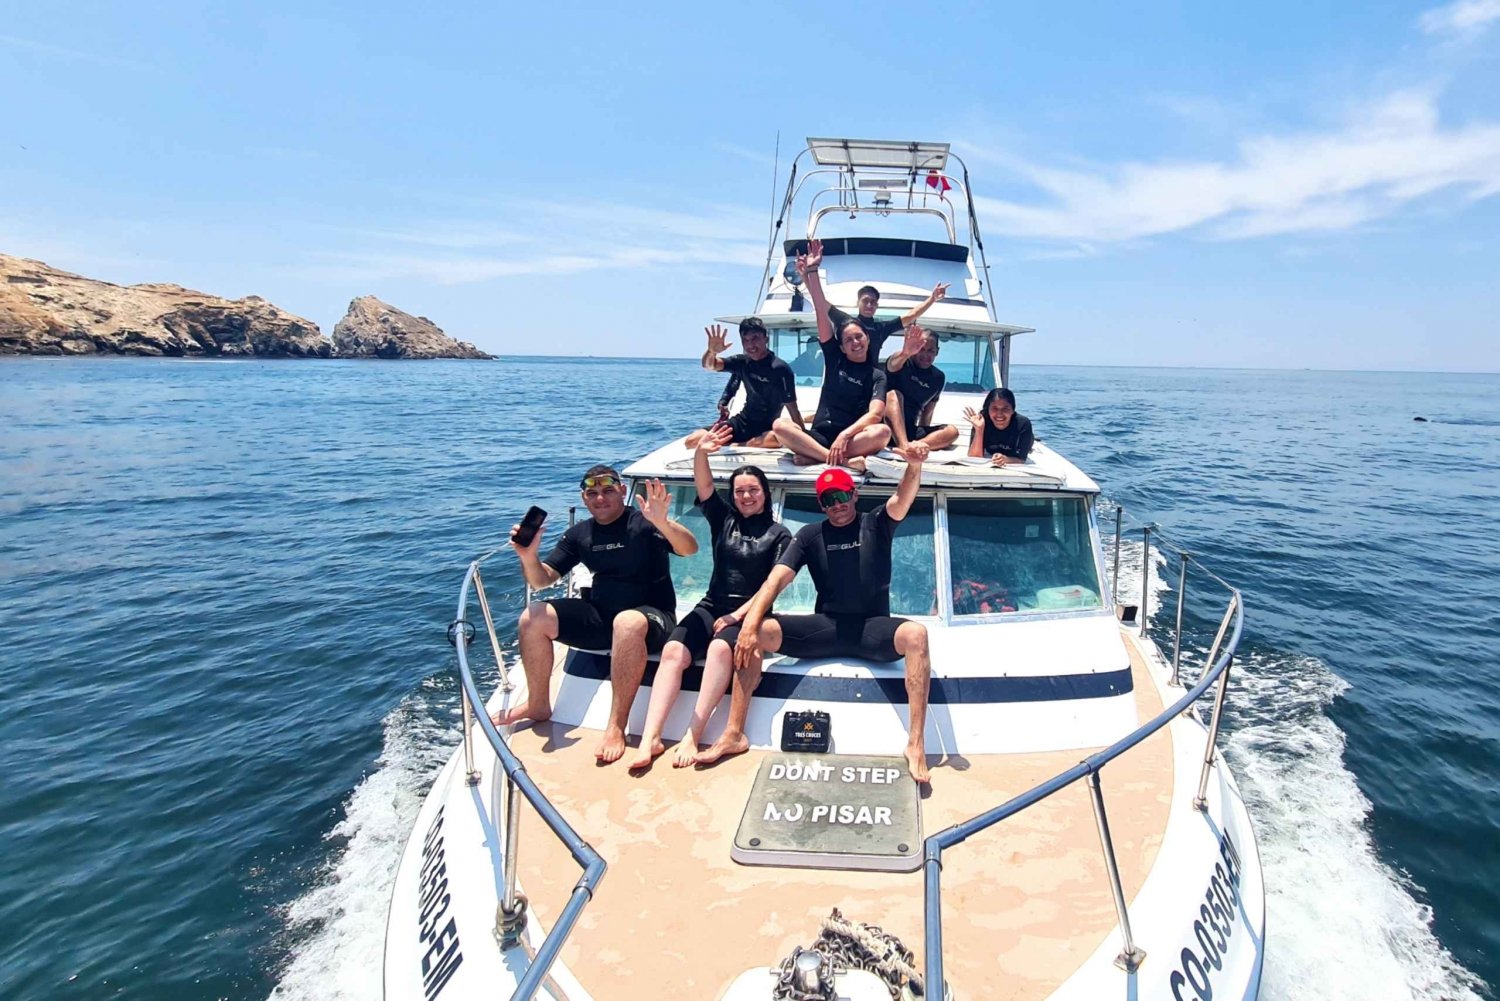 Lima: äventyr i havet med lekfulla sjölejon